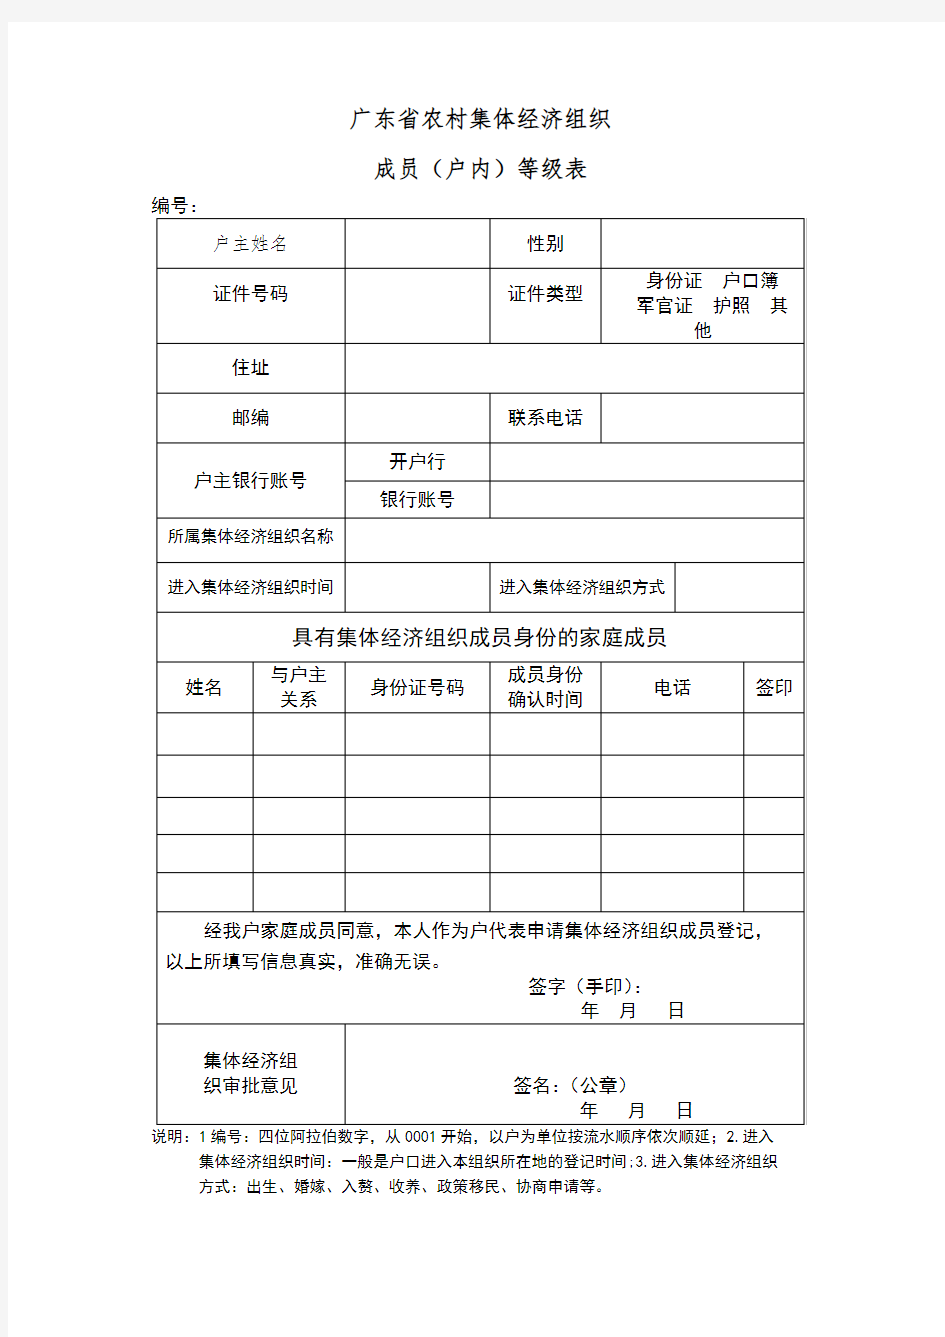 广东省农村集体经济组织成员登记表